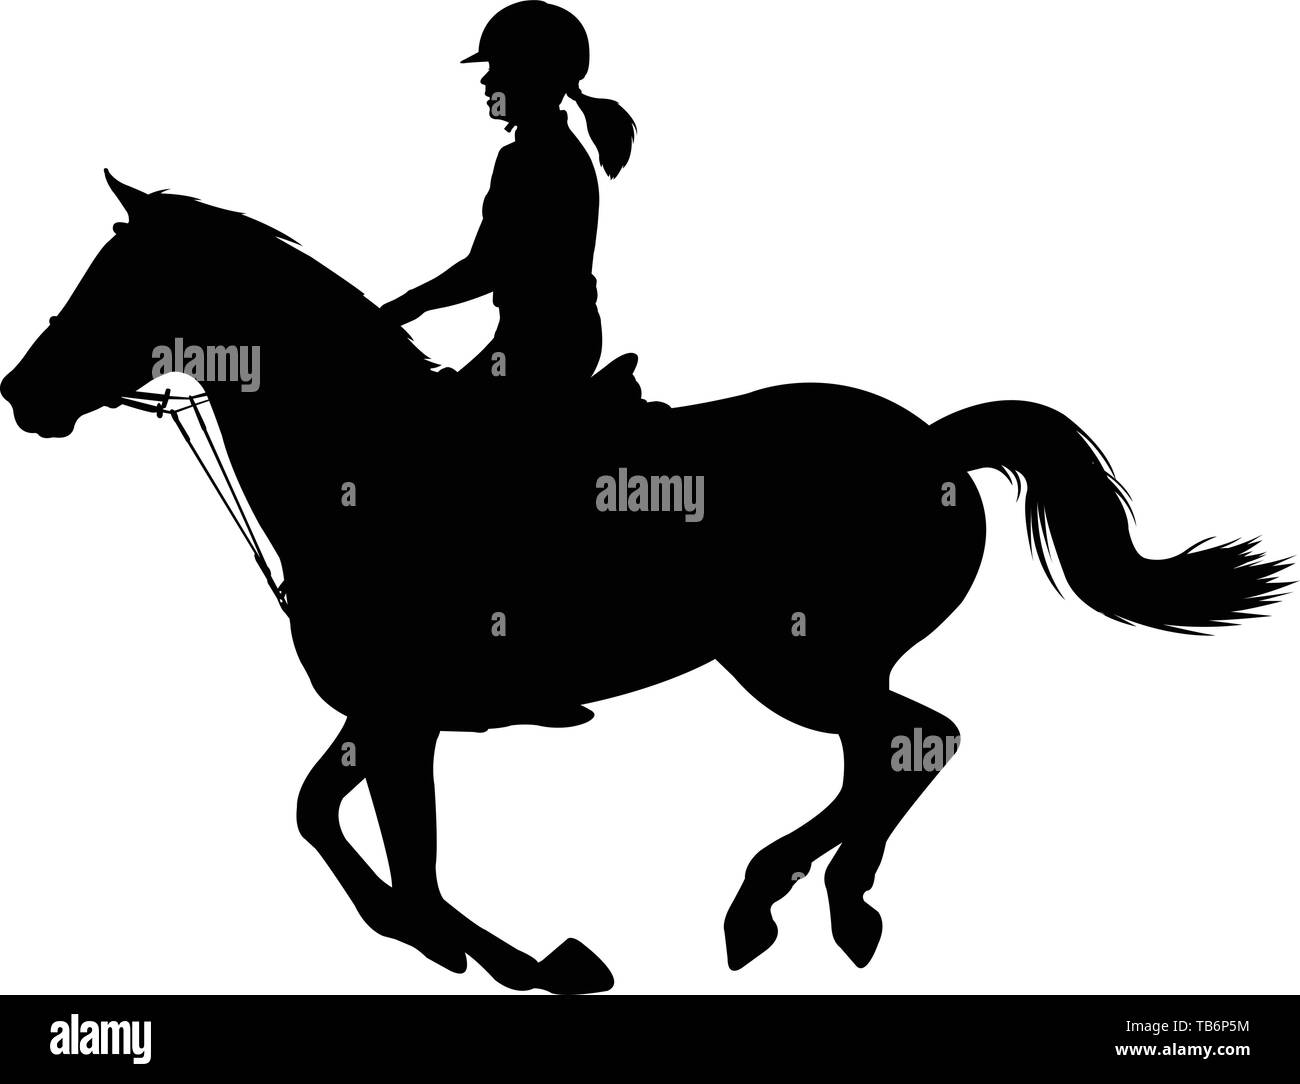 Junge Frau ein Pferd reiten Silhouette-Vektor Stock Vektor